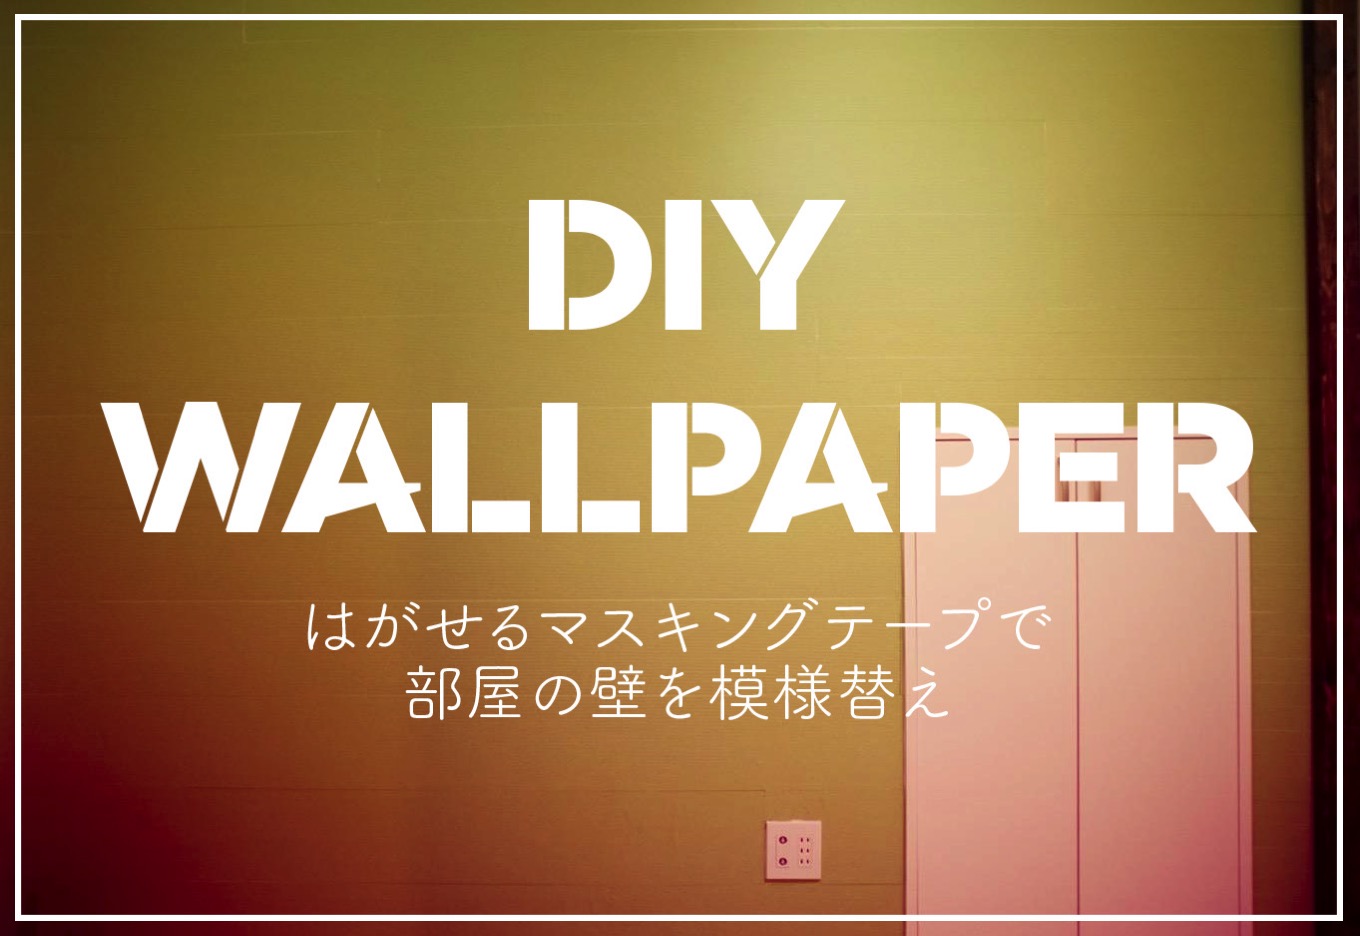 Diy wallpapertop